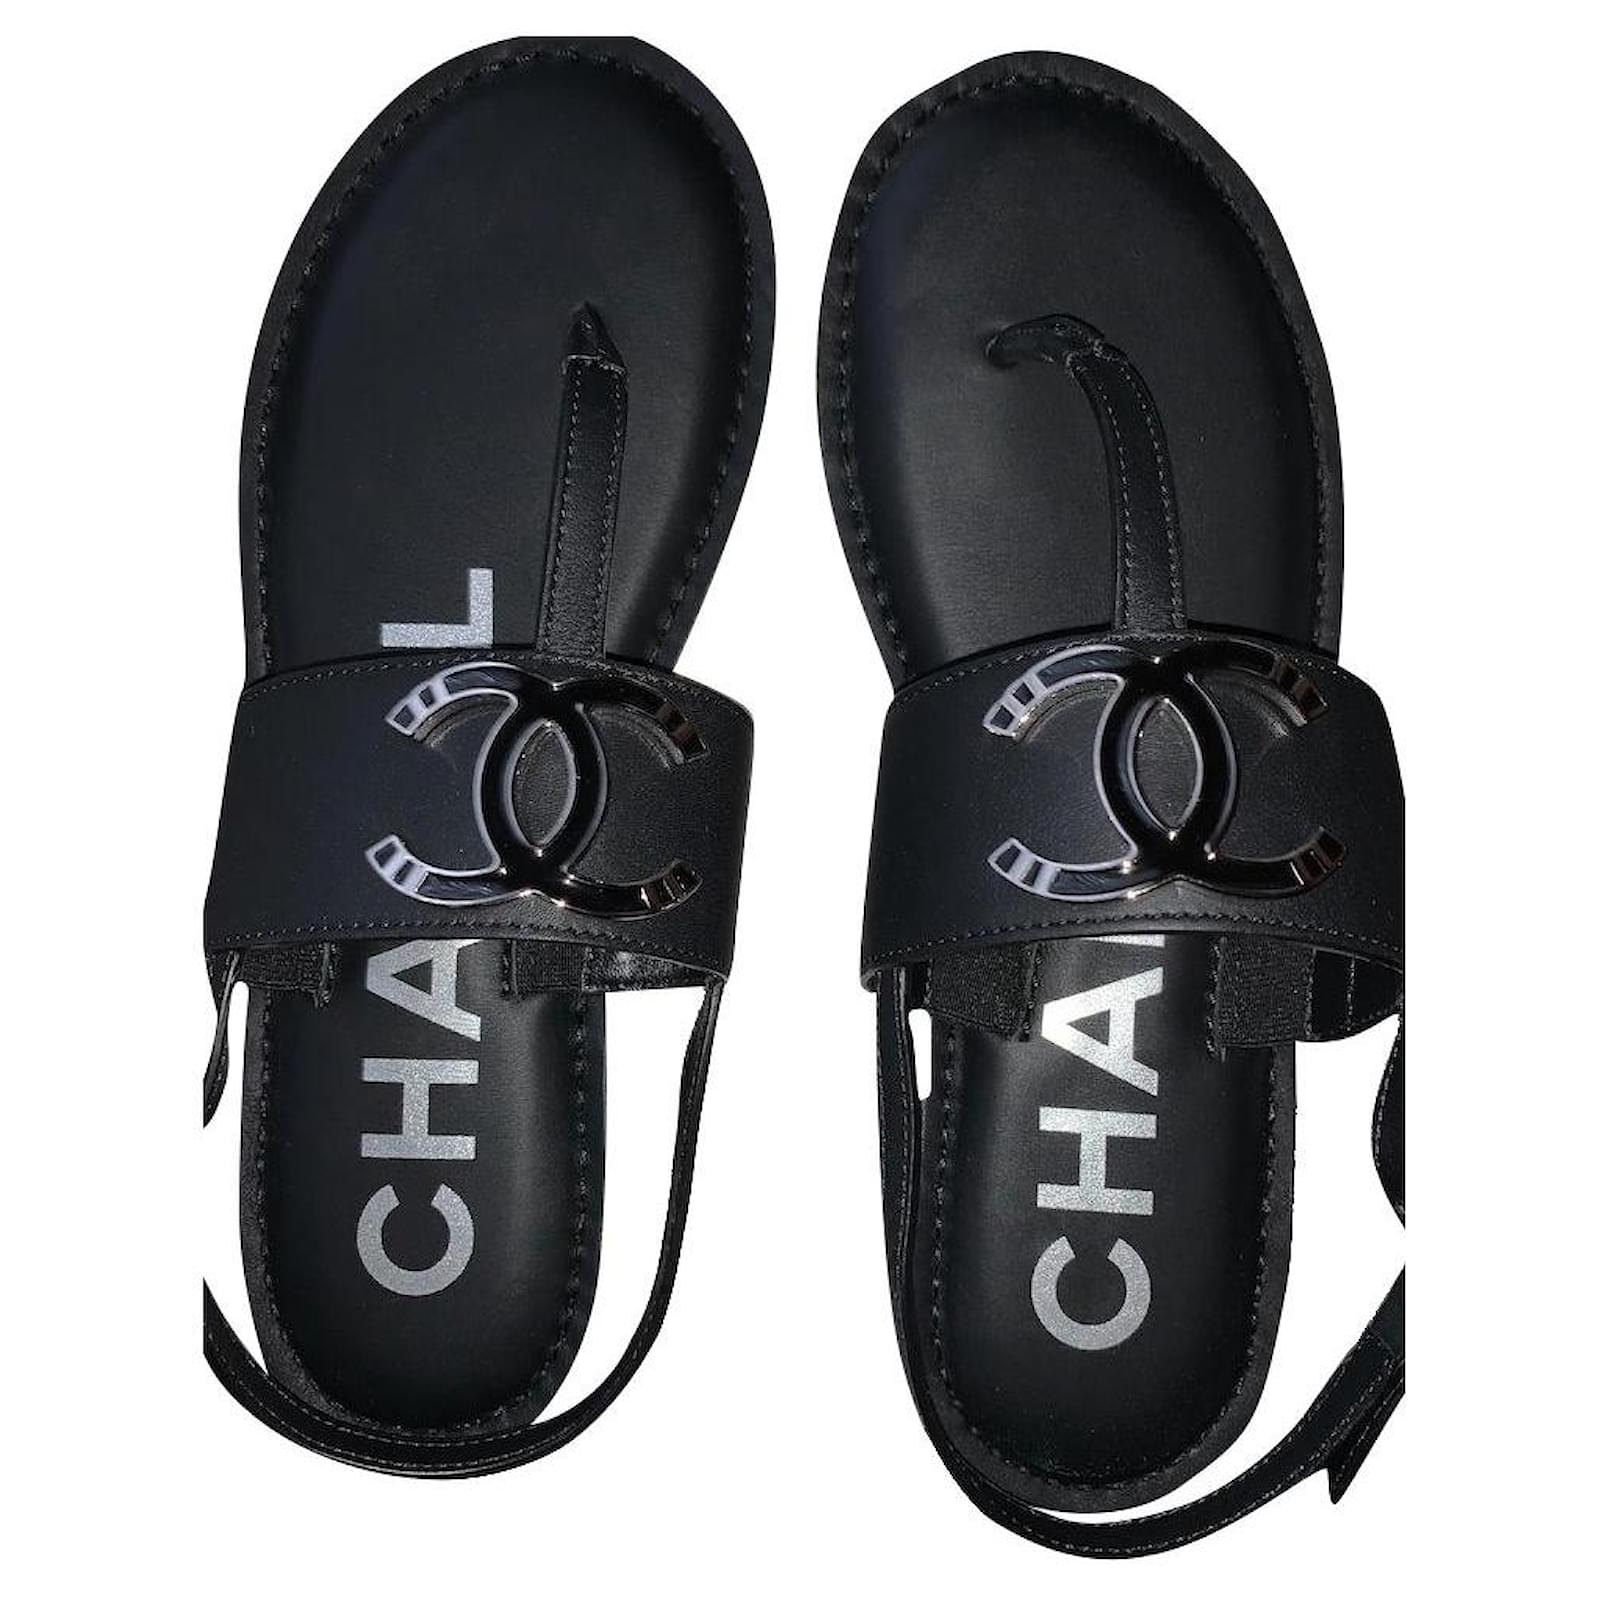 Chanel Black Mesh Camellia Slide Flat Sandals Size 40 Chanel